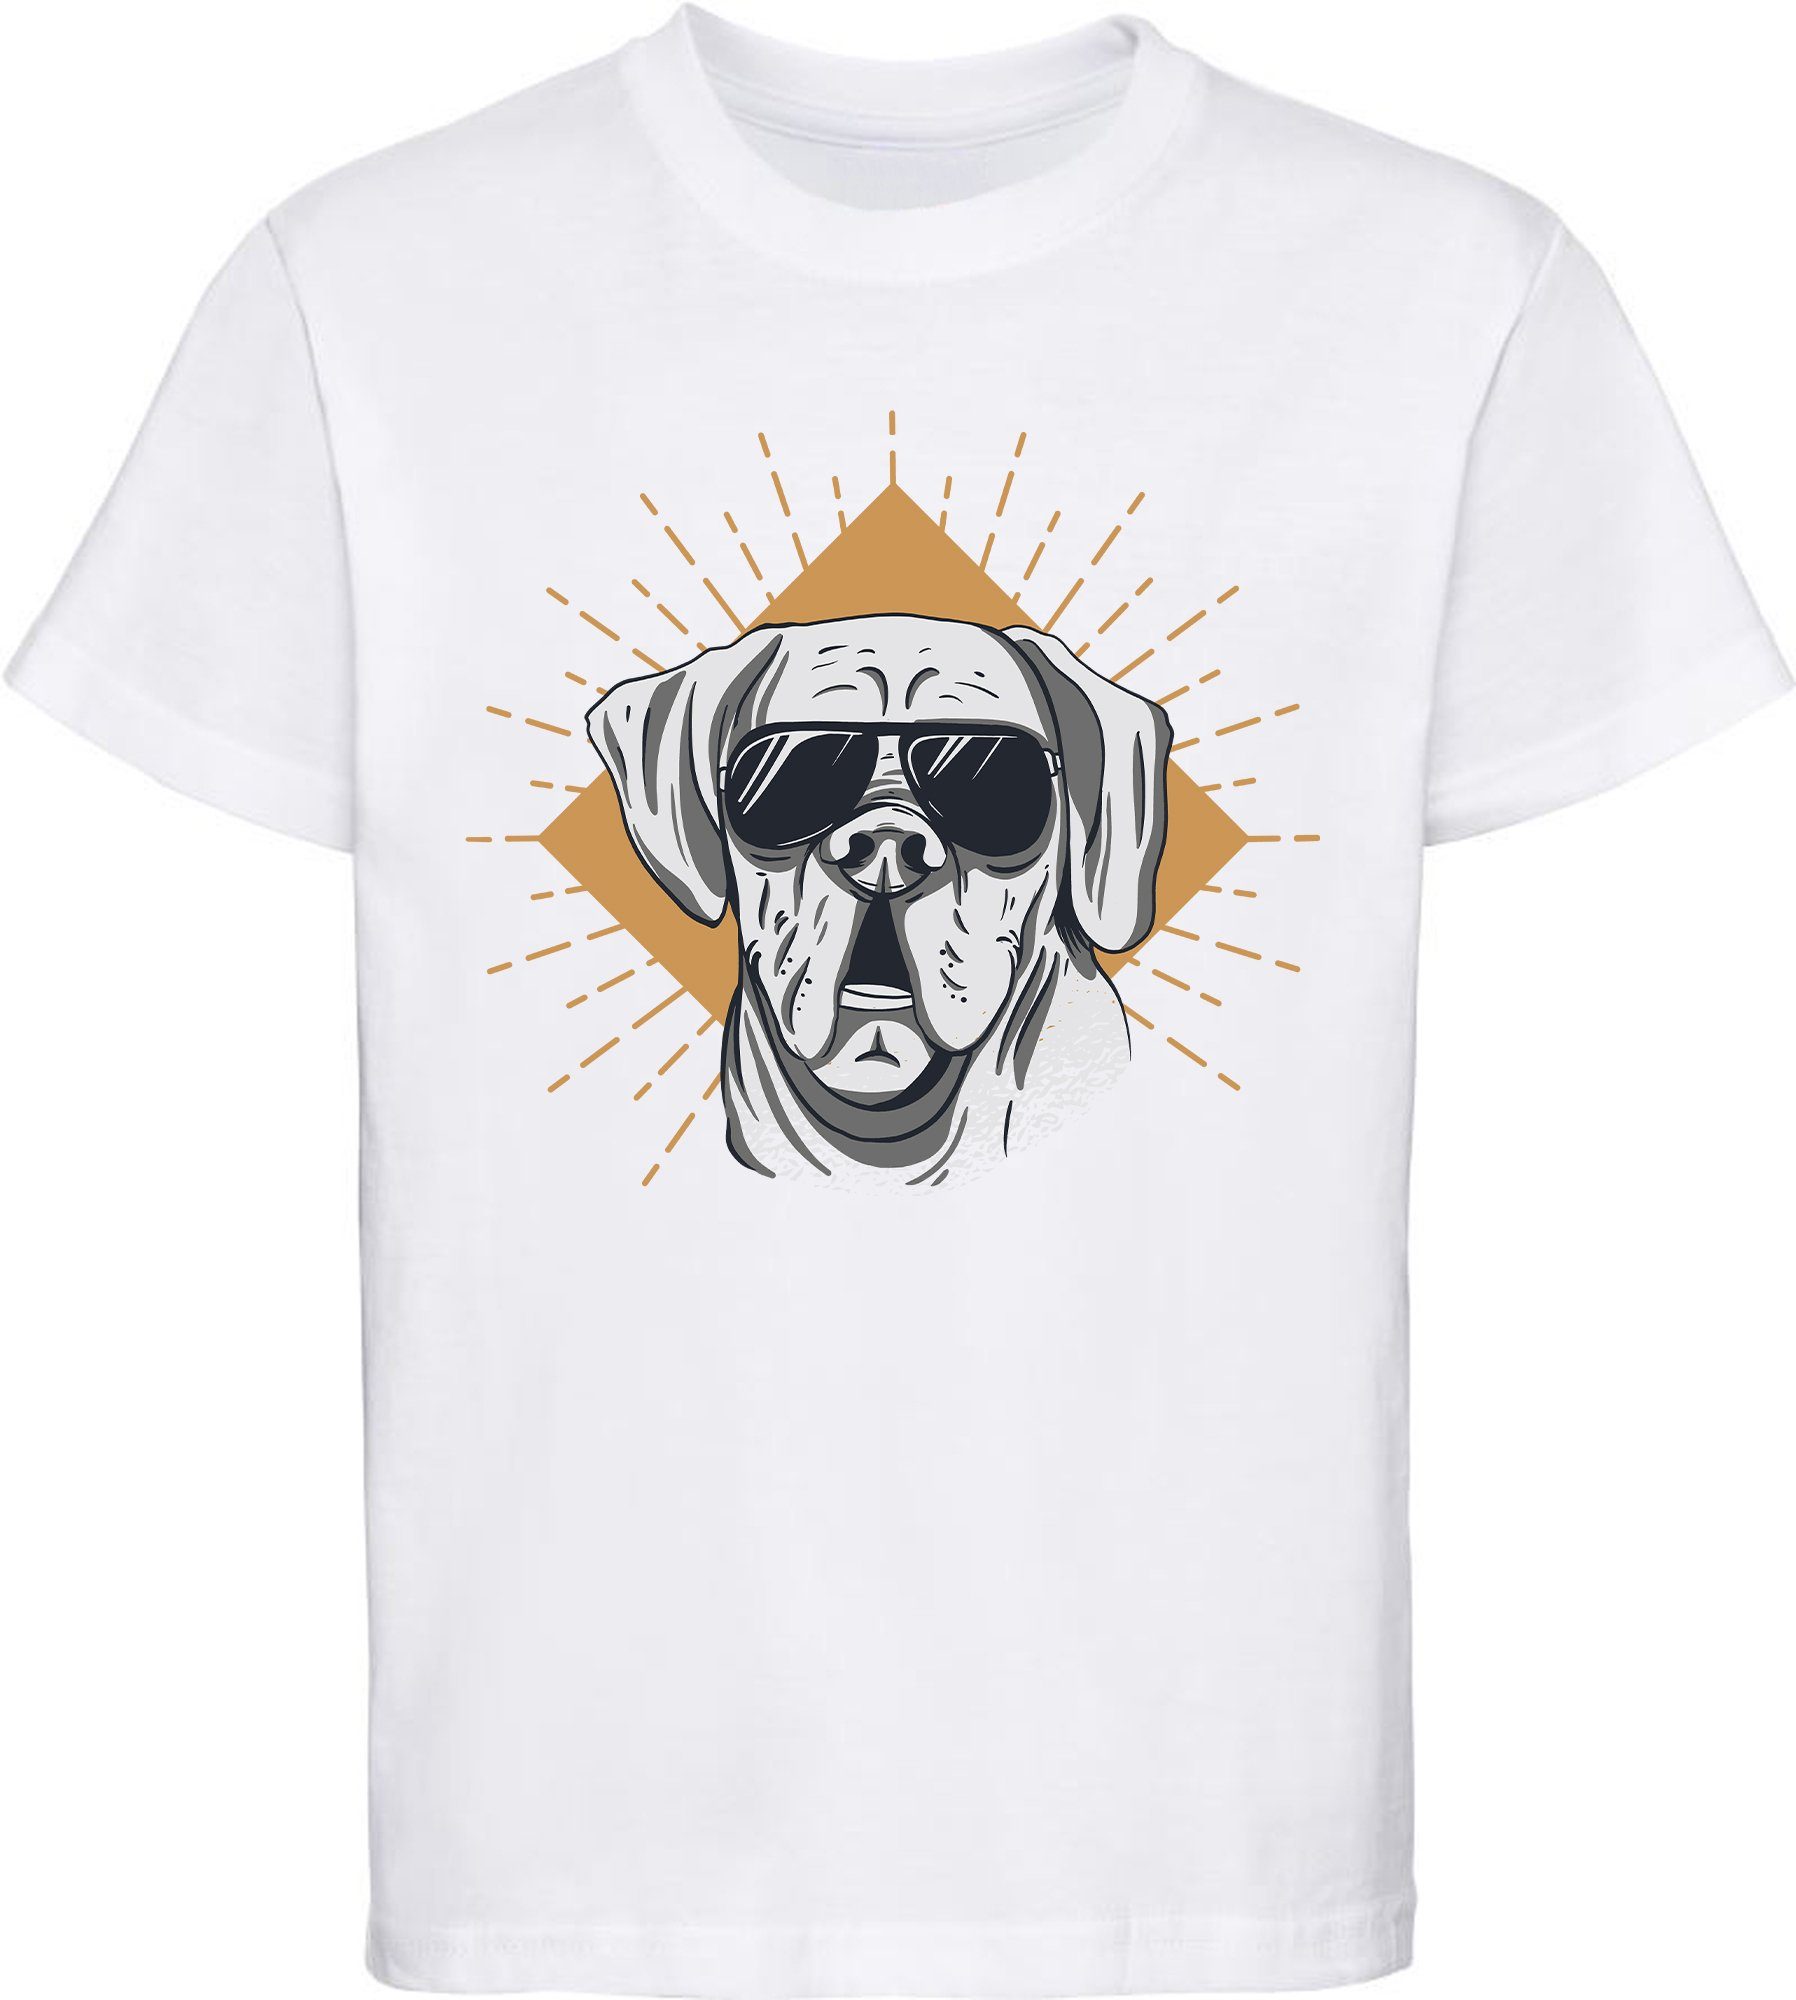 MyDesign24 Print-Shirt bedrucktes Kinder Hunde T-Shirt - Cooler Hund mit Sonnenbrille Baumwollshirt mit Aufdruck, i224 weiss